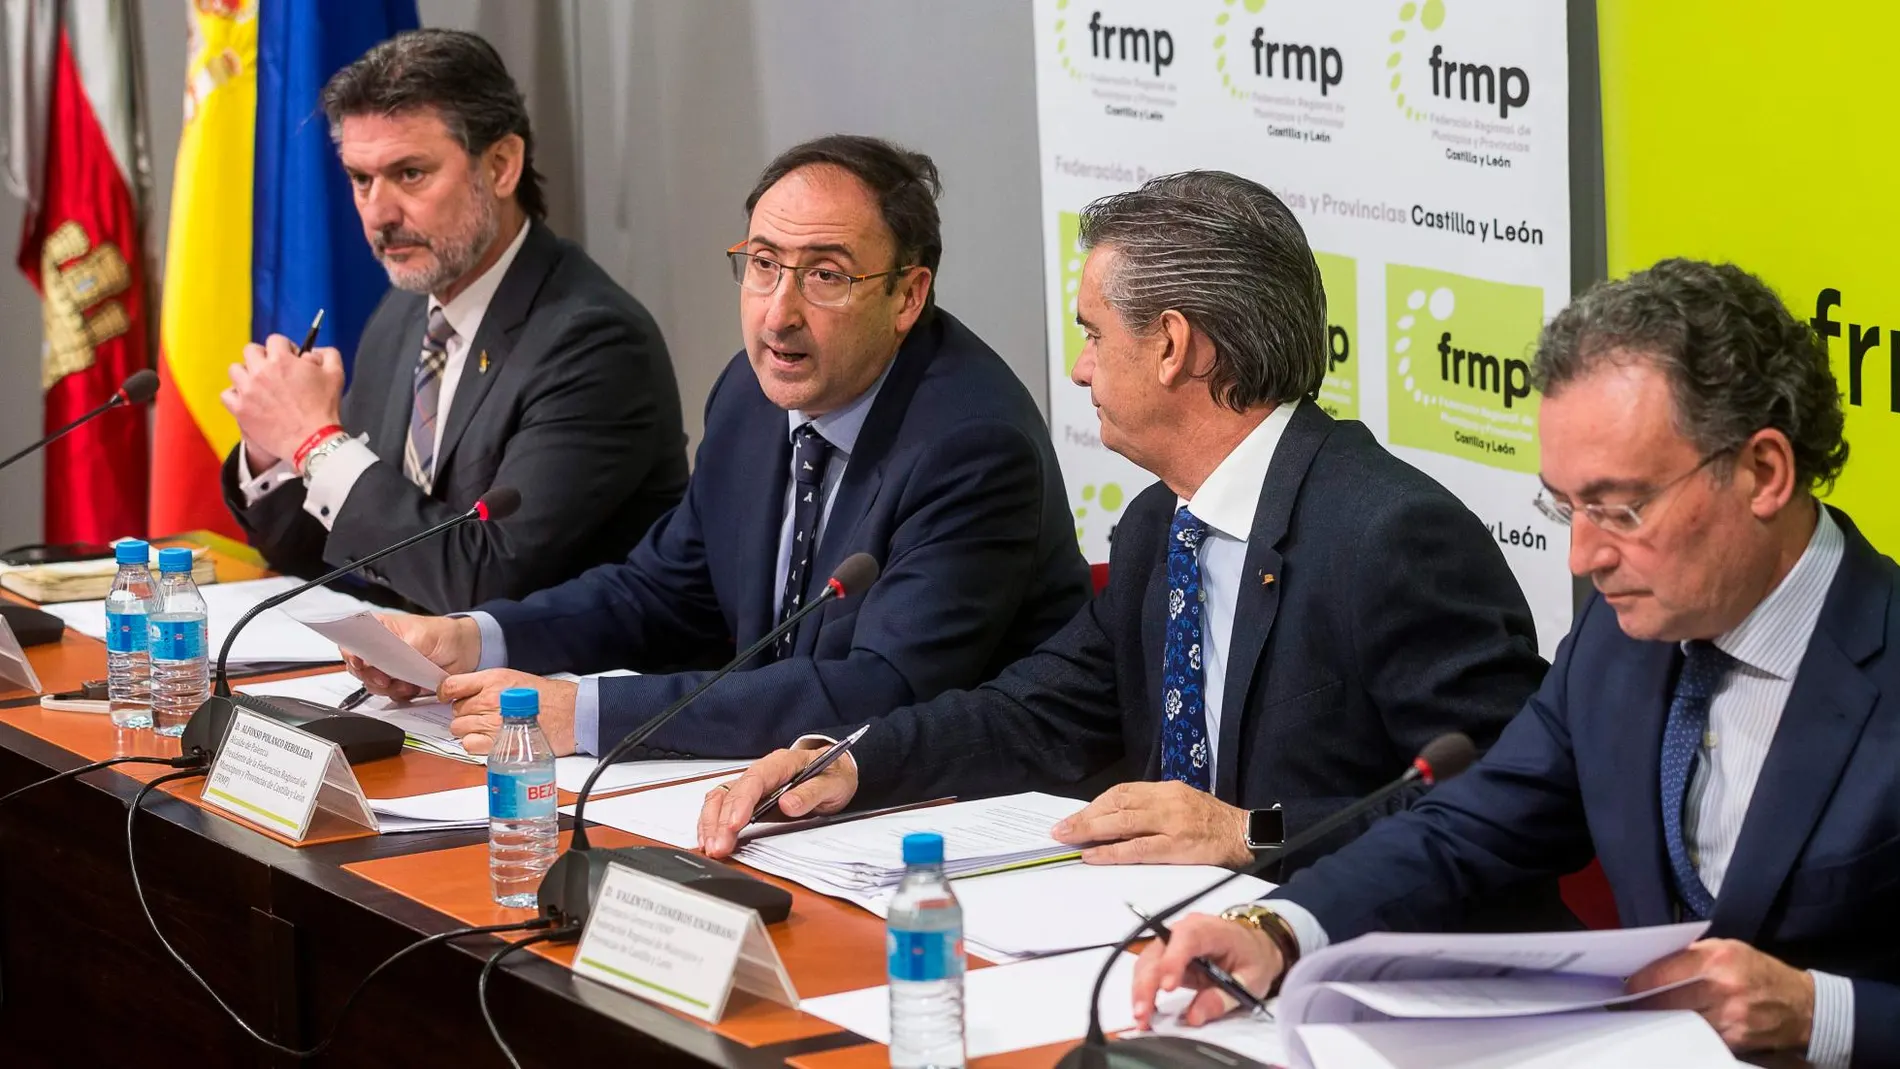 El presidente, Alfonso Polanco junto a José Luis Vázquez, Valentín Cisneros Escribano y Fernando Salguero García preside la Comision Ejecutiva de la FRMP